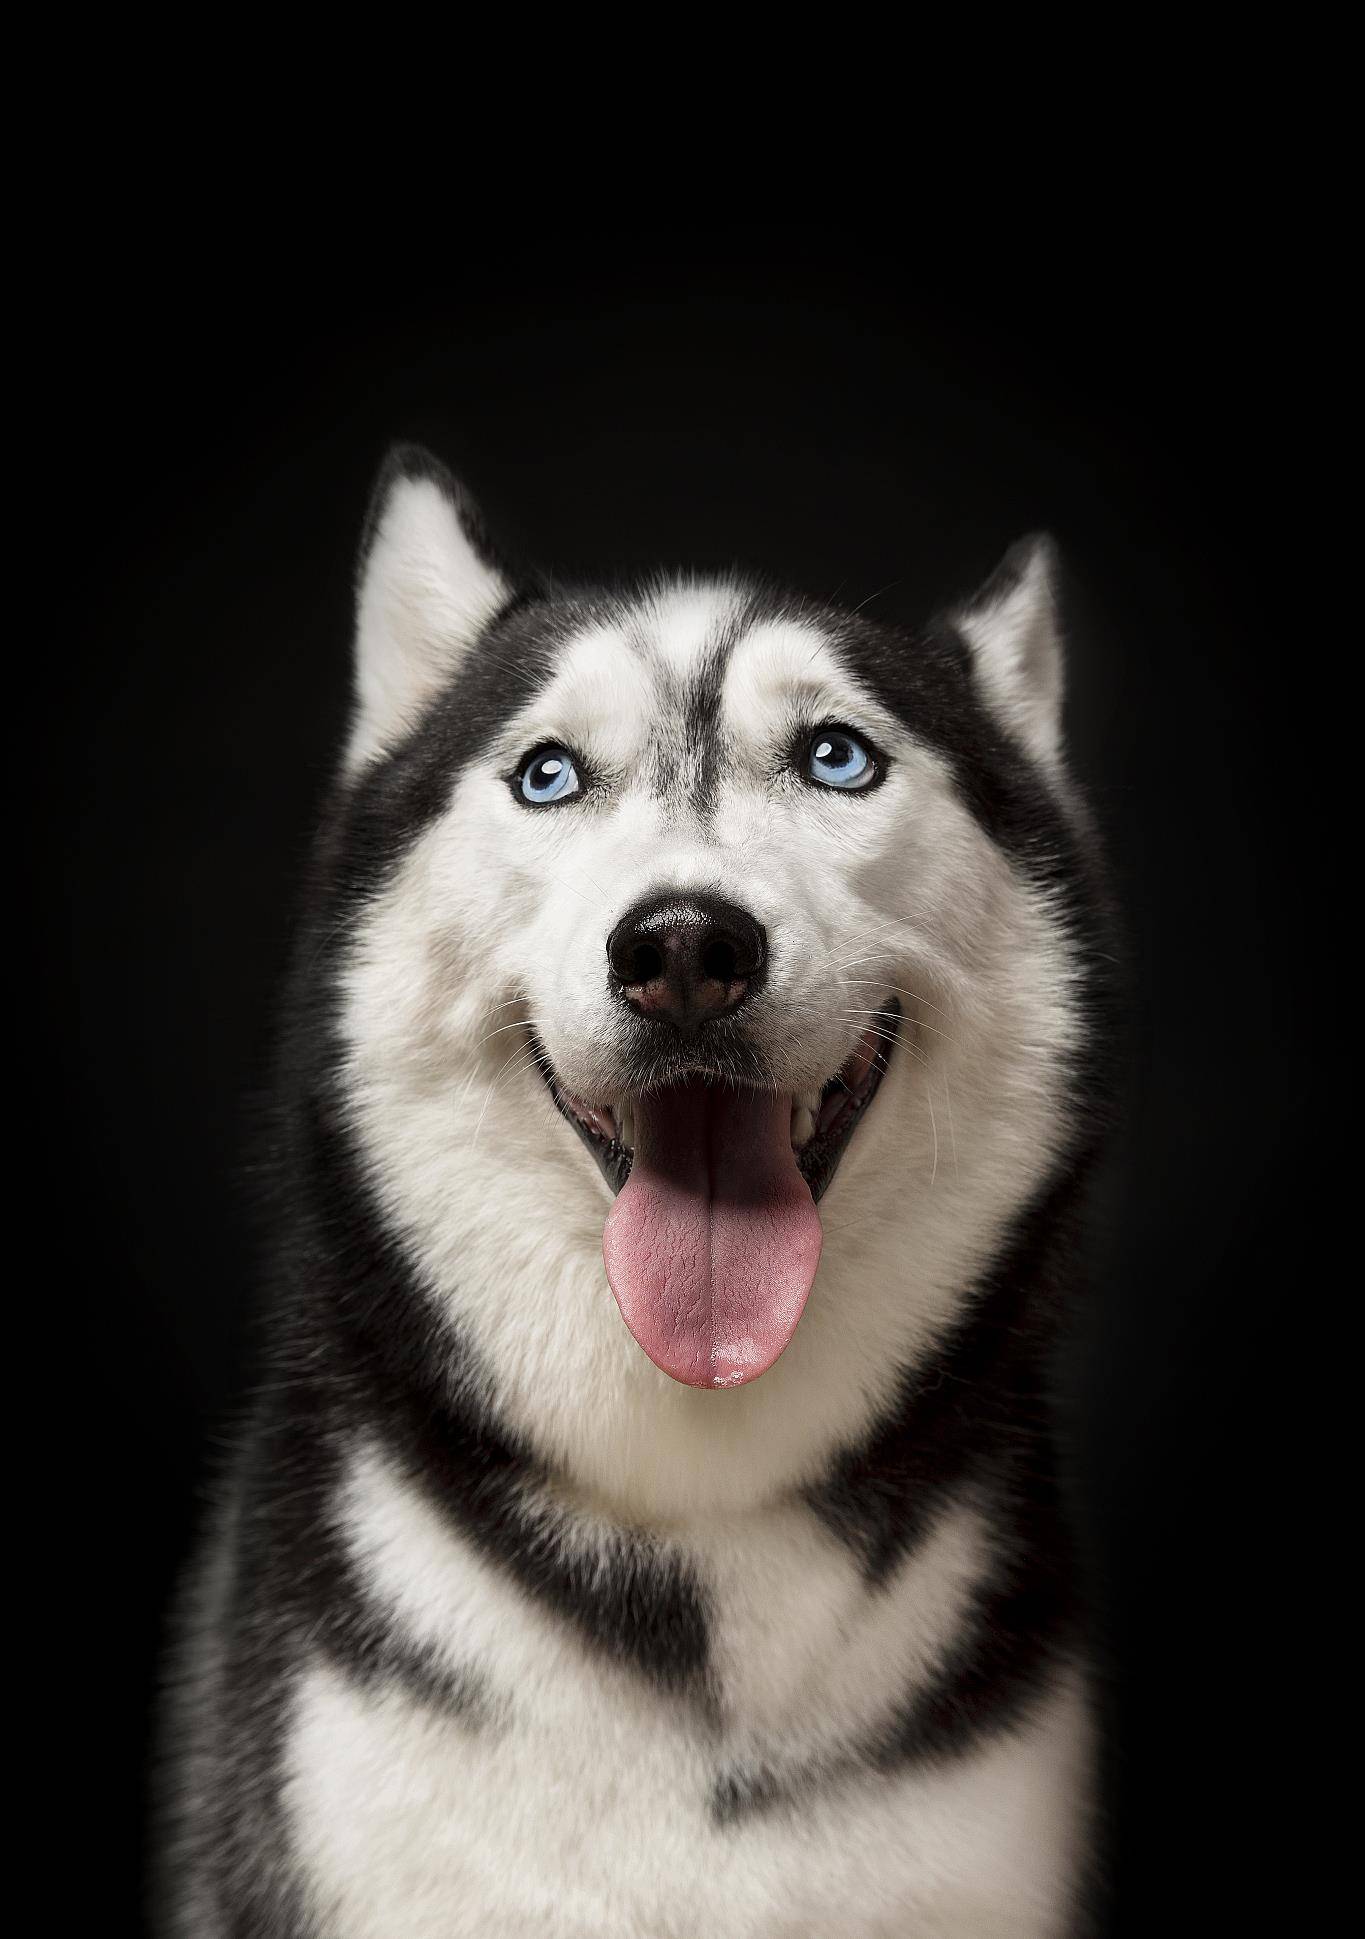 哈士奇,西伯利亚雪橇犬,简称二哈